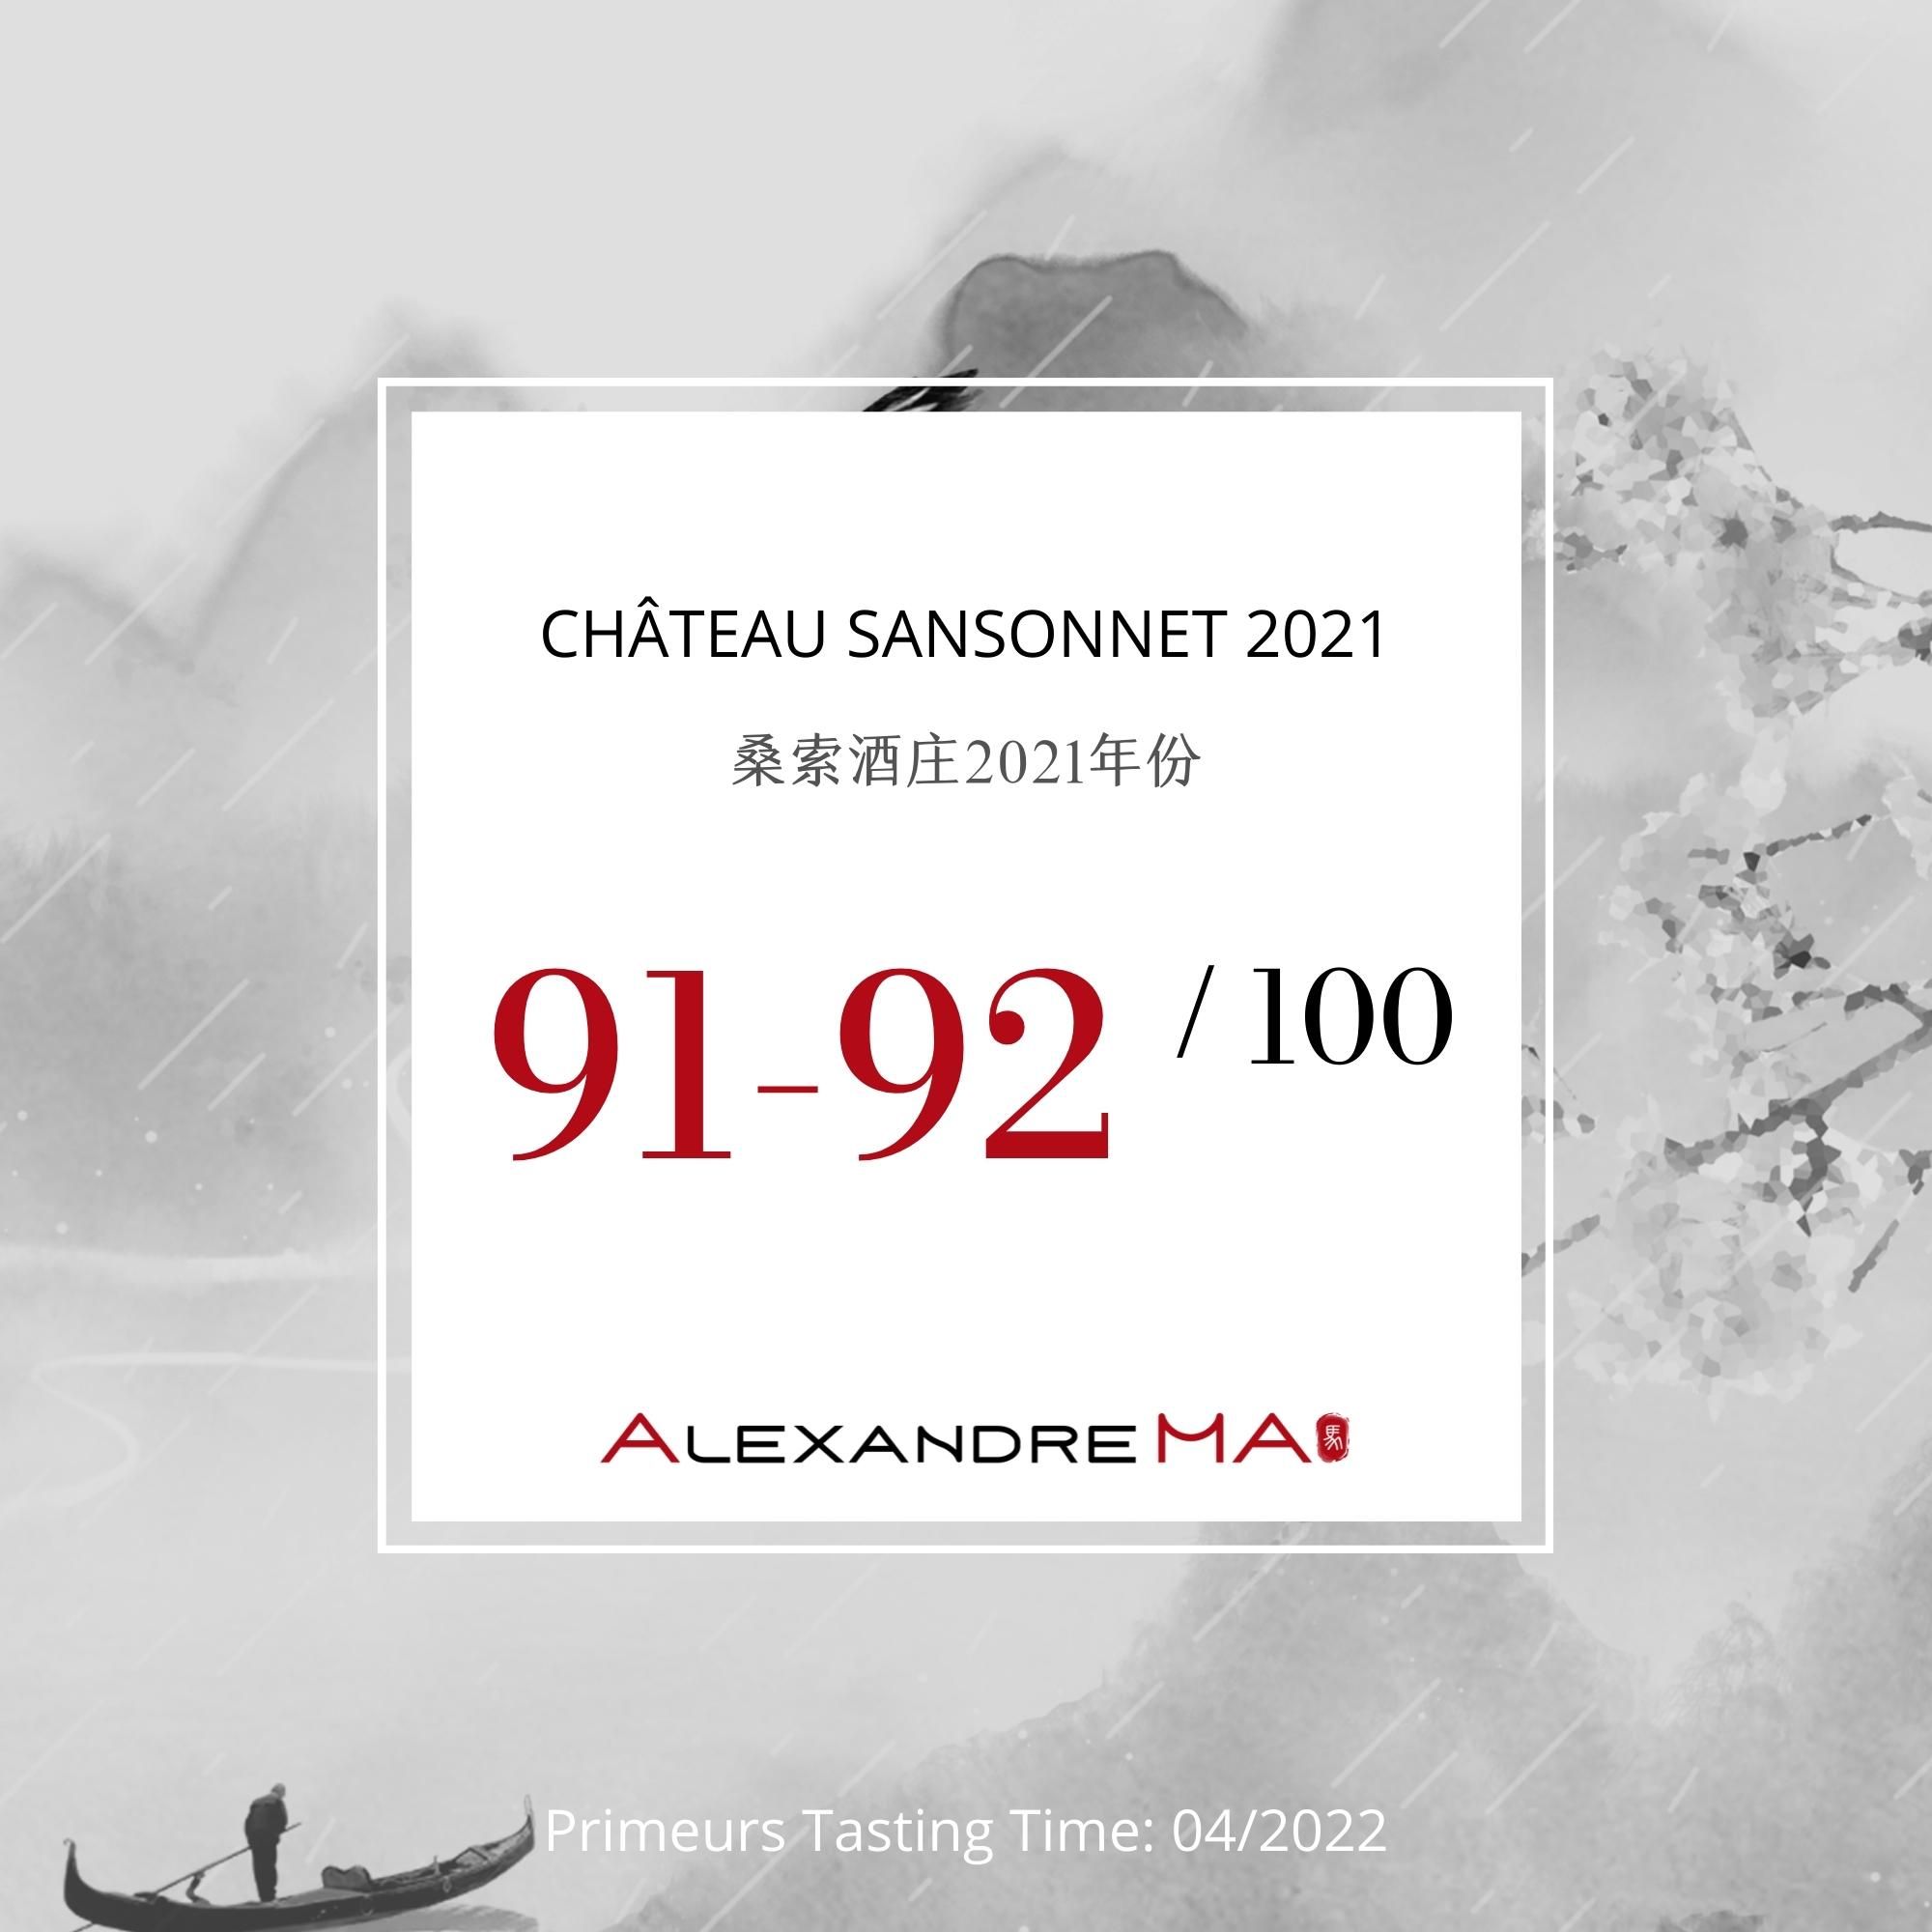 Château Sansonnet 2021 - Alexandre MA